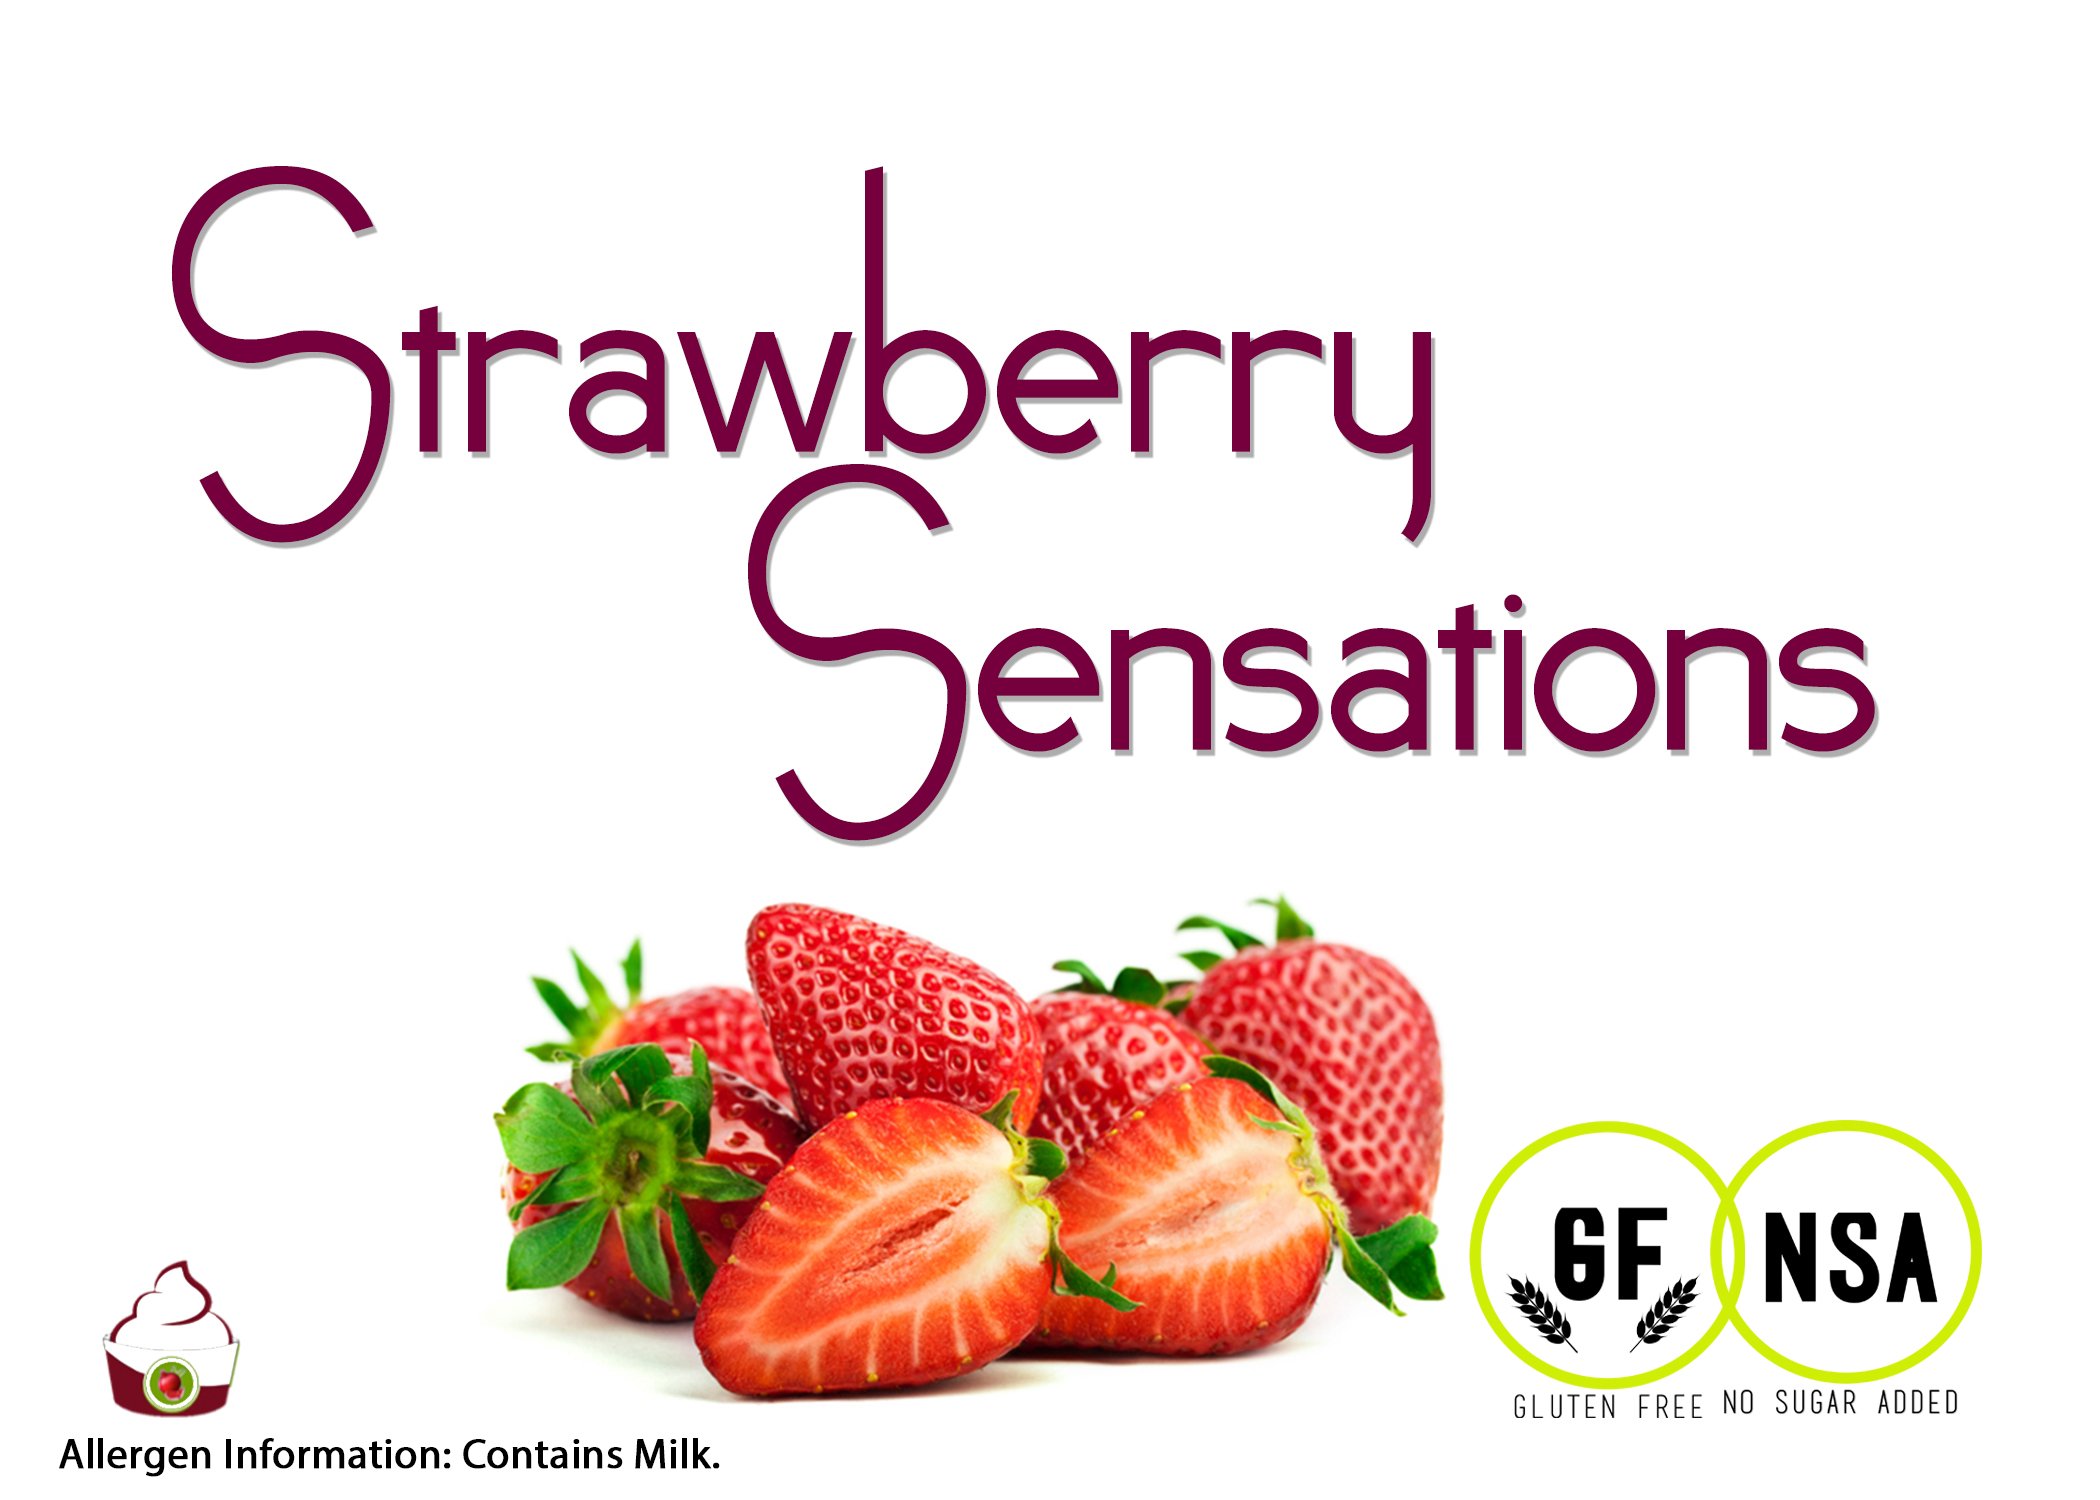 strawberry sensations nsa copy.jpg